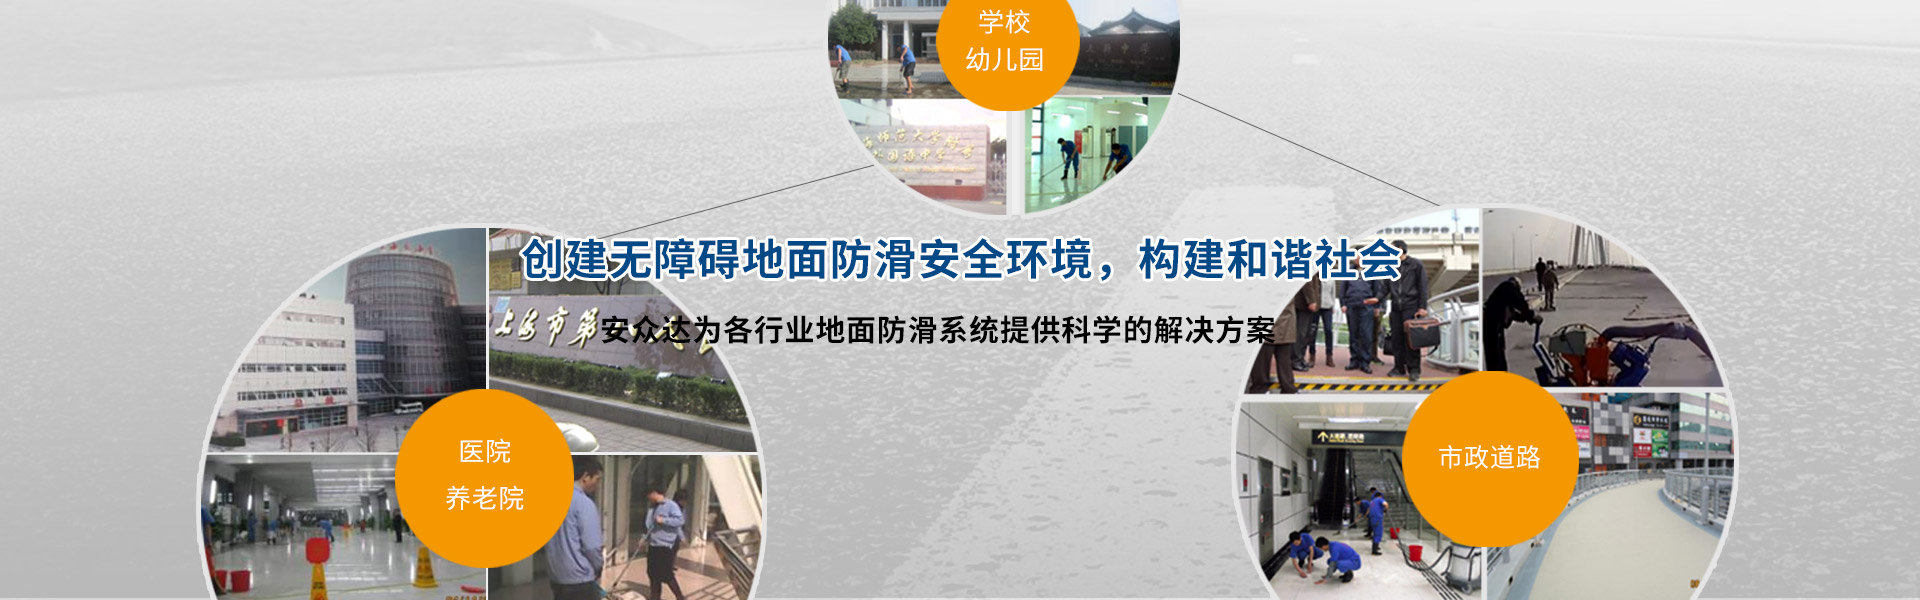 上海安眾達地面防滑工程技術有限公司